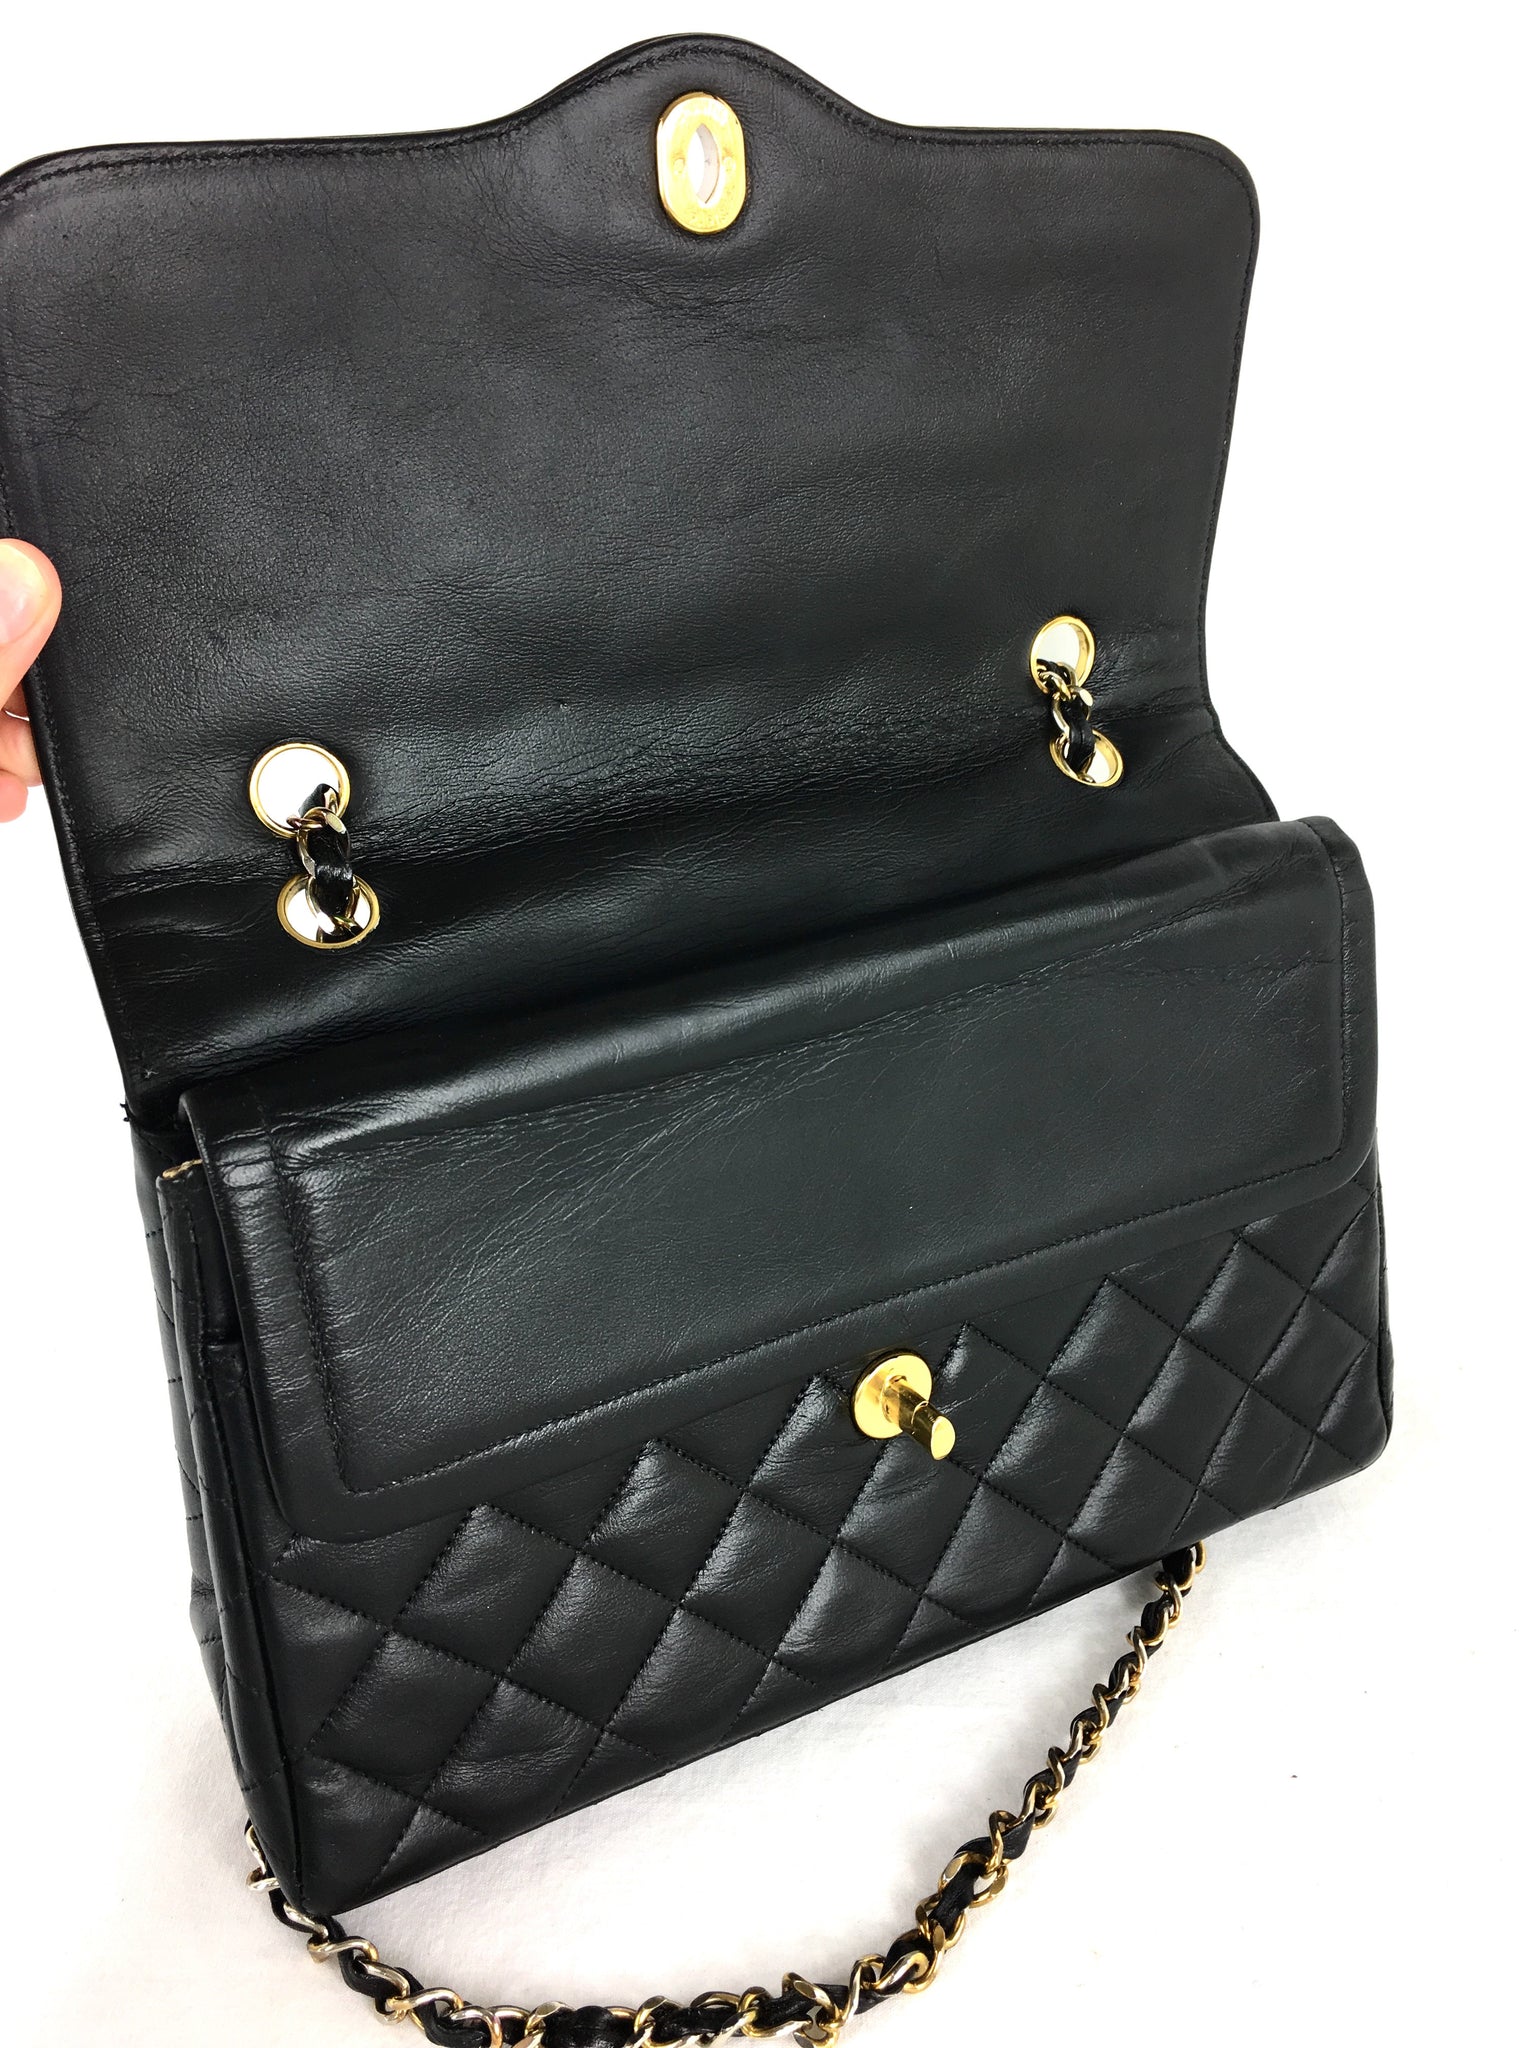 CHANEL Paris Limited Edition 2.55 Double Flap Vintage Bag – Pretty